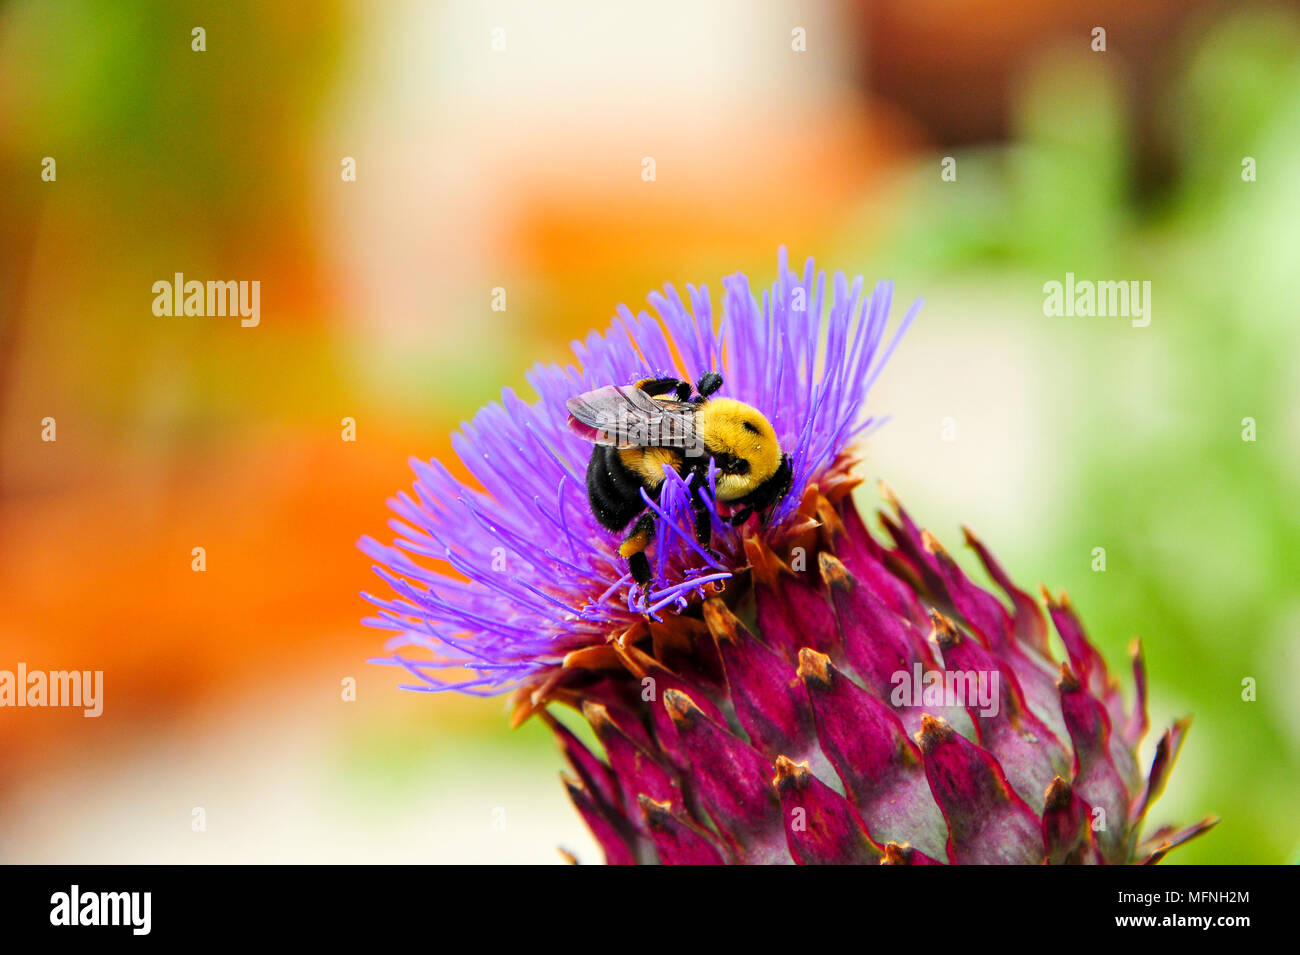 Cierre de un abejorro recogiendo polen de una flor púrpura cardo (Cynara cadunculus) Foto de stock